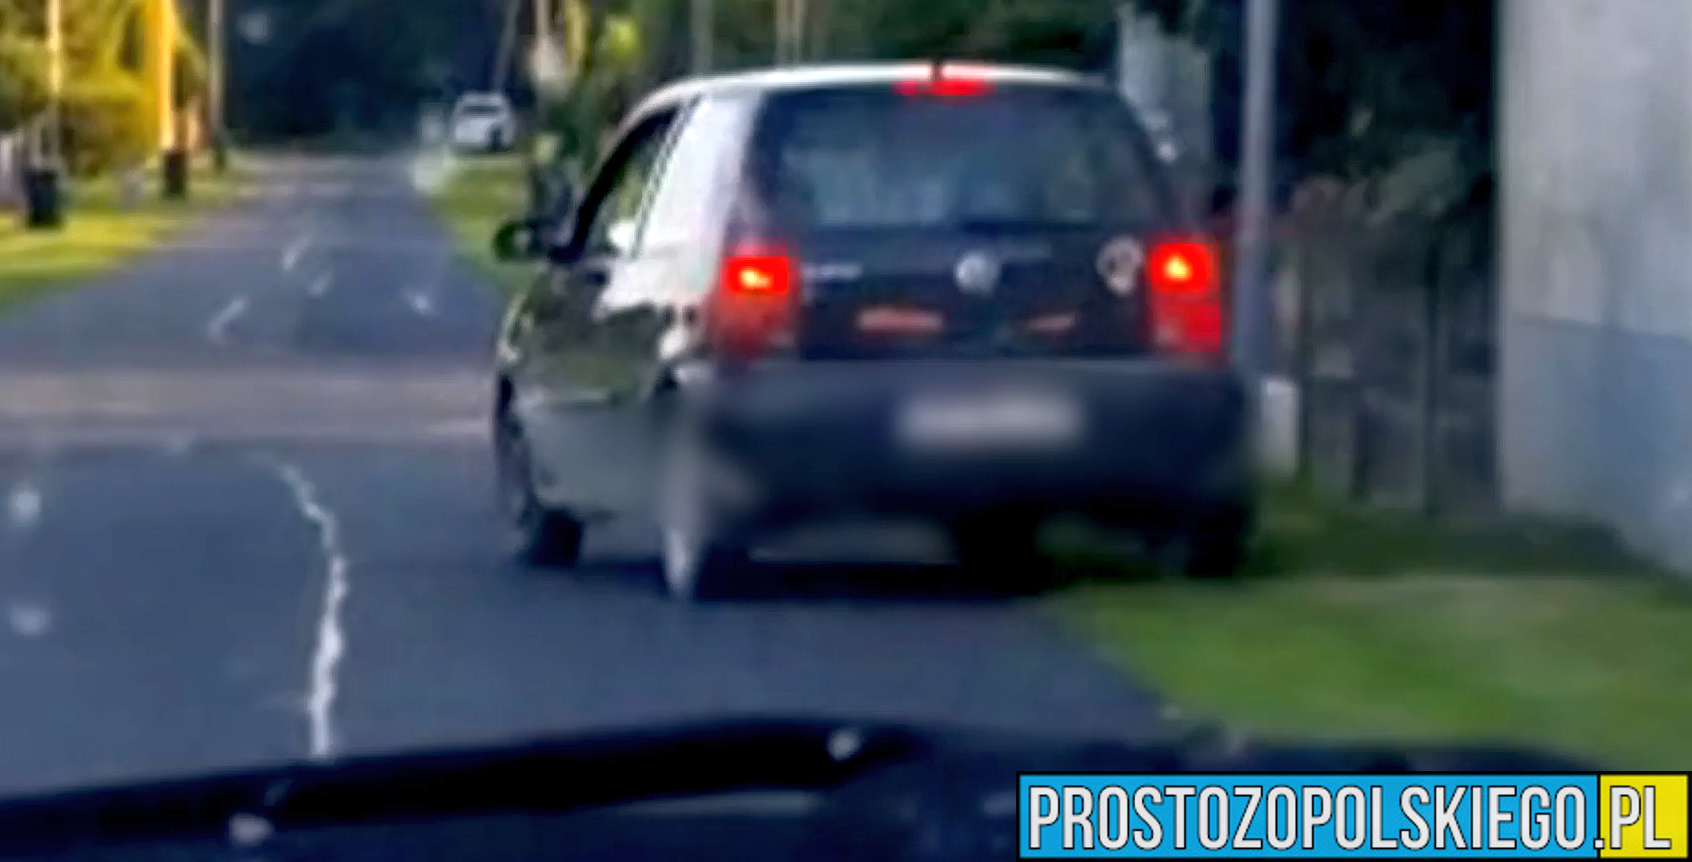 Rajd kierowcy autem we wsi Kadłub w powiecie strzeleckim. Mężczyzna miał prawie 3 promile.(Wideo)